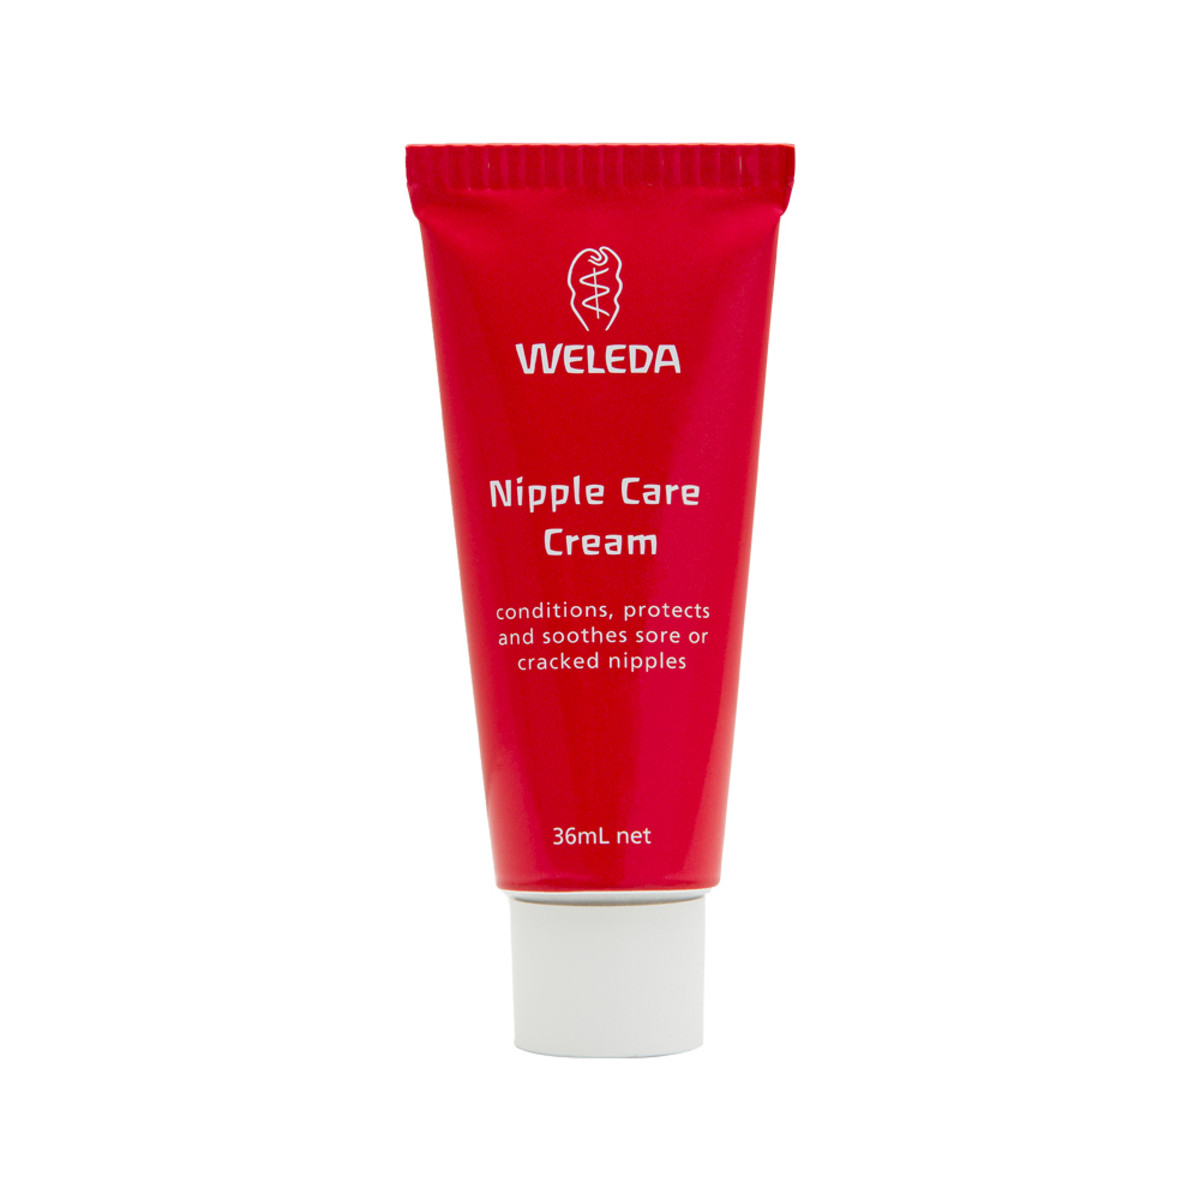 WELEDA - Nipple Care Cream